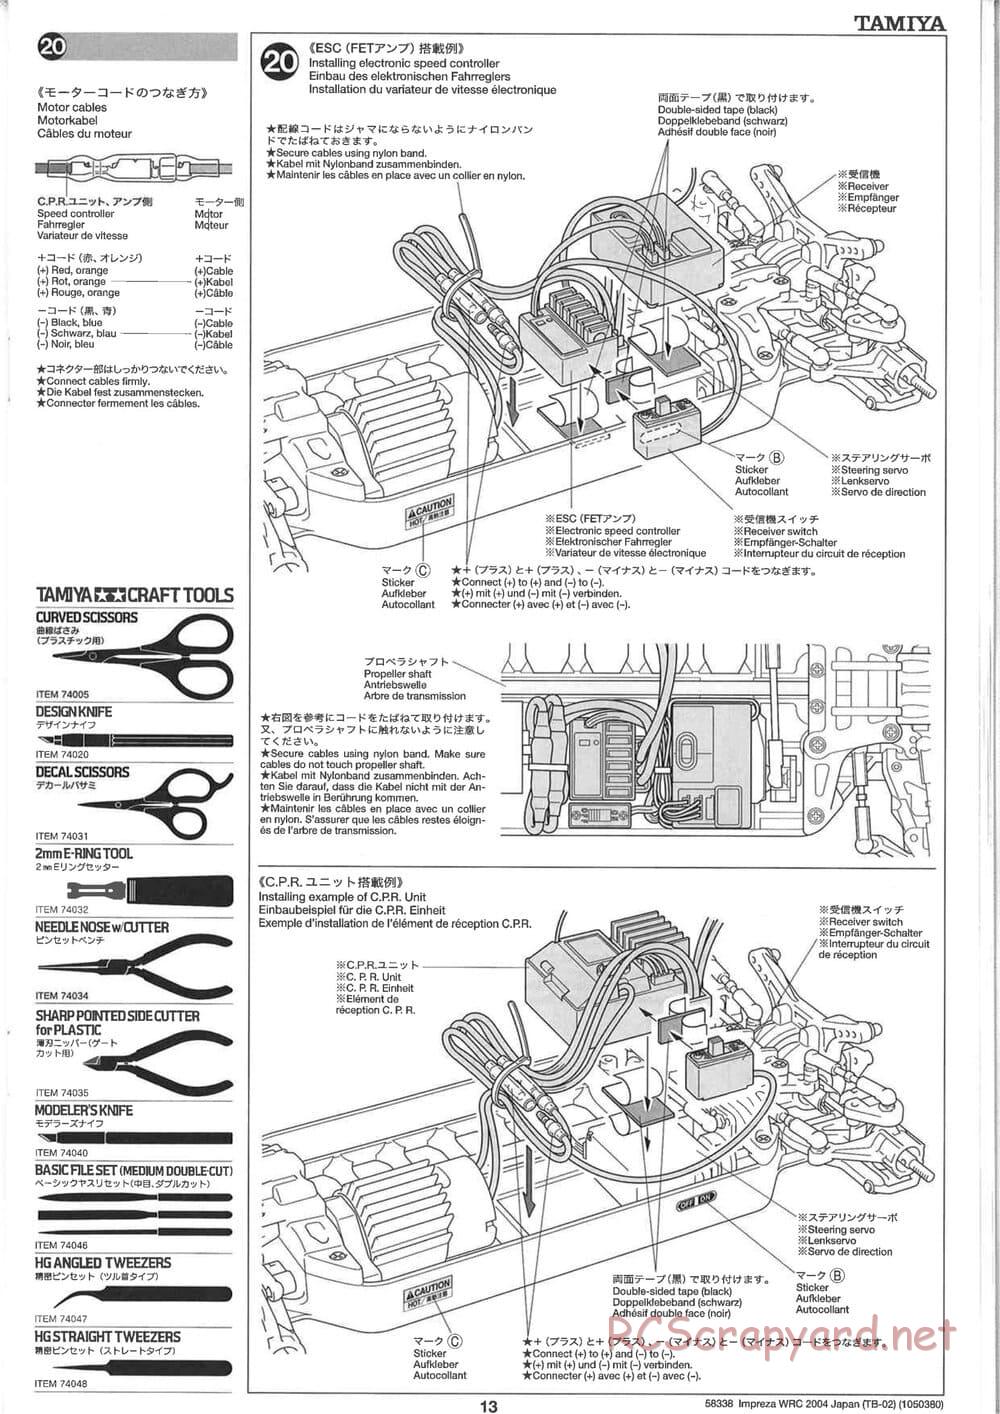 Tamiya - Subaru Impreza WRC 2004 Rally Japan - TB-02 Chassis - Manual - Page 13